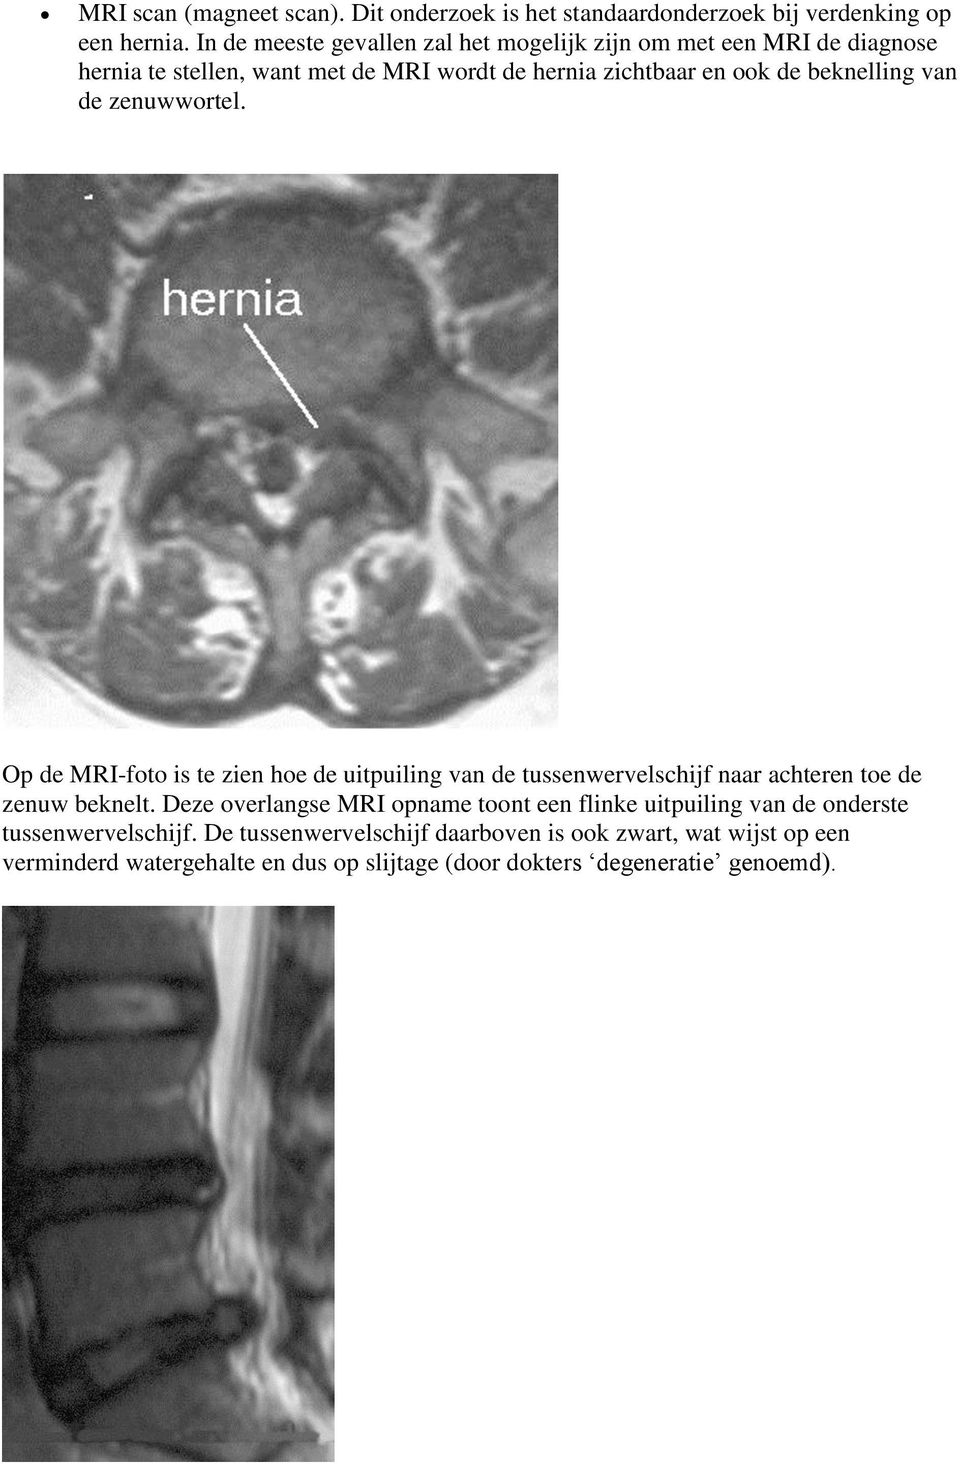 beknelling van de zenuwwortel. Op de MRI-foto is te zien hoe de uitpuiling van de tussenwervelschijf naar achteren toe de zenuw beknelt.